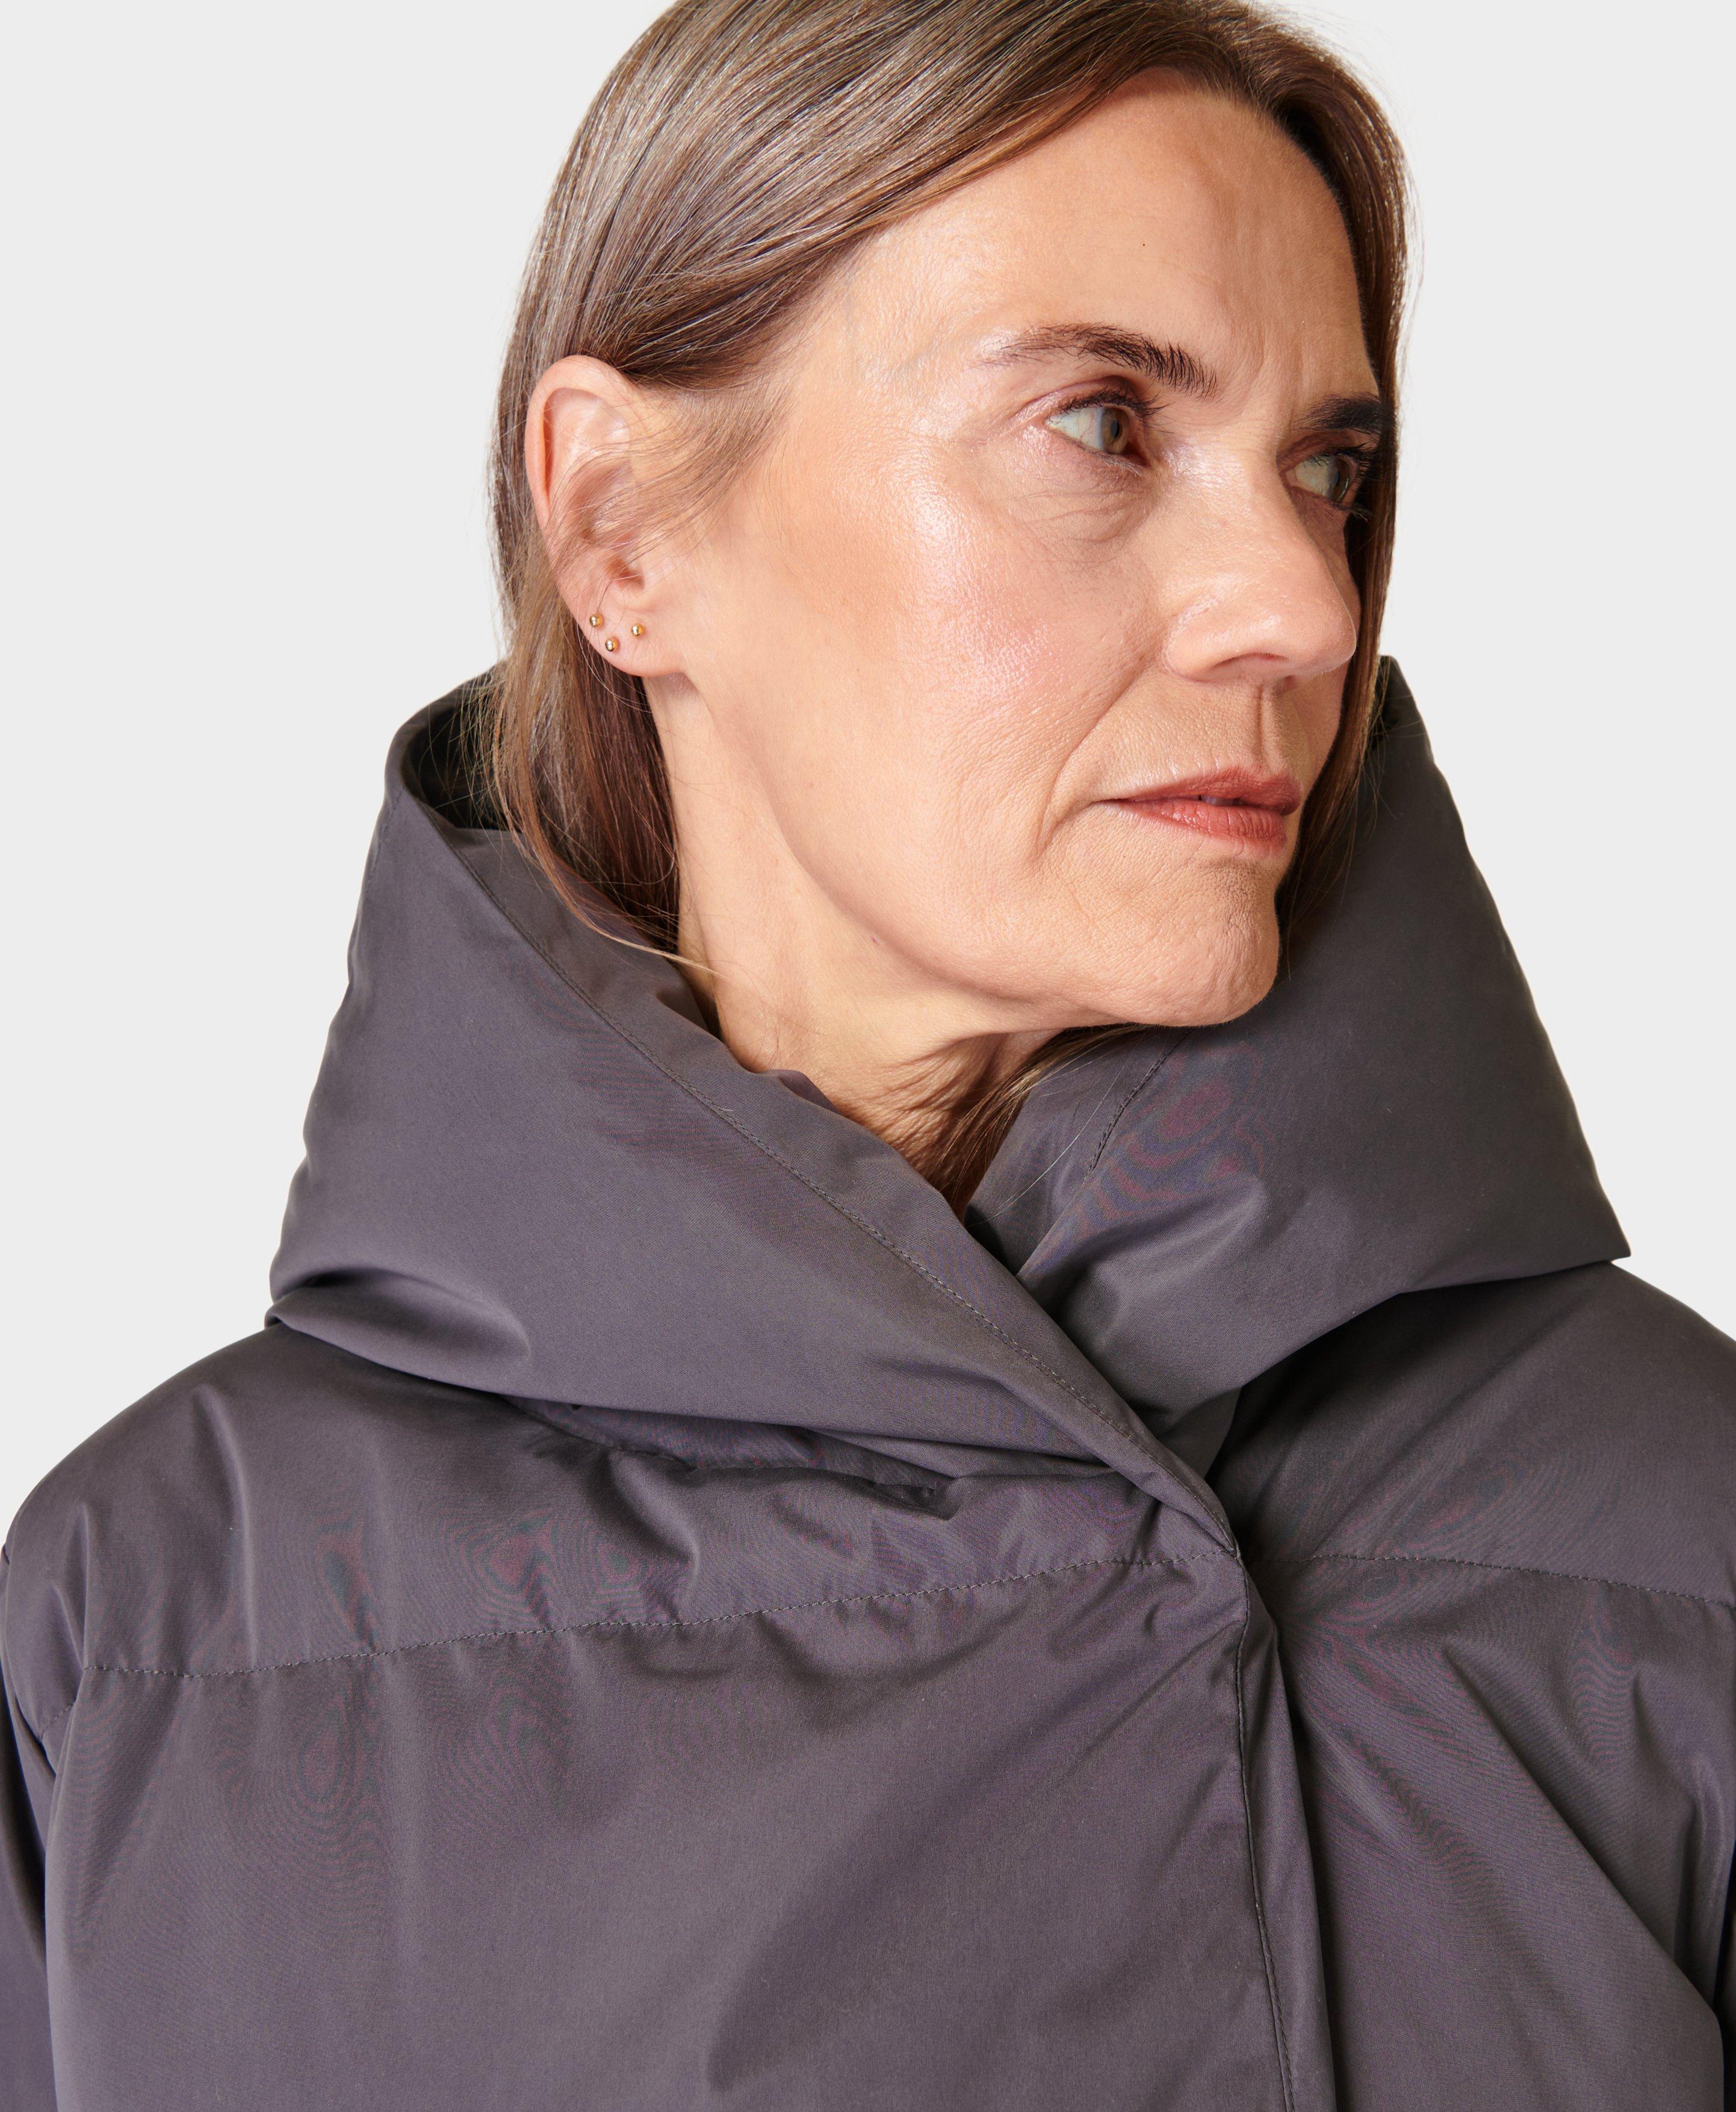 Reversible Cocoon Jacket - Women - Ready-to-Wear